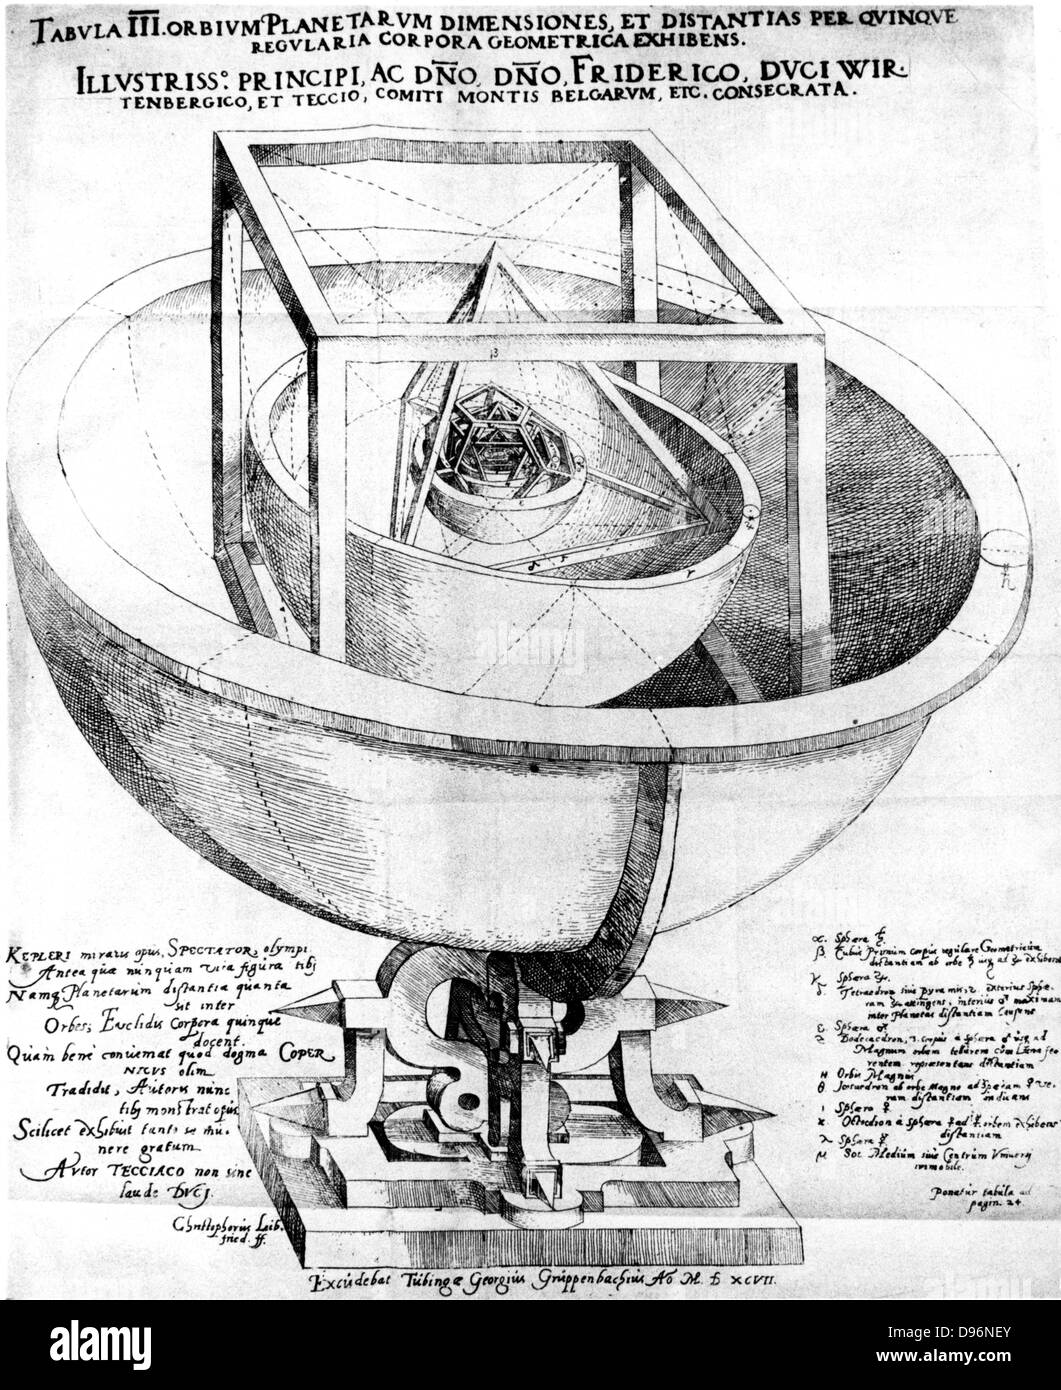 Kepler spiegazione della struttura del sistema planetario, 1619. Johannes Keppler (1571-1630) utilizzati i cinque poliedri regolari tra le sfere dei pianeti nel diagramma della sua spiegazione. Da 'Hamonice mundi', Johannes Keppler, (1619), il libro che ha pubblicato la sua terza legge del moto planetario. Incisione. Foto Stock